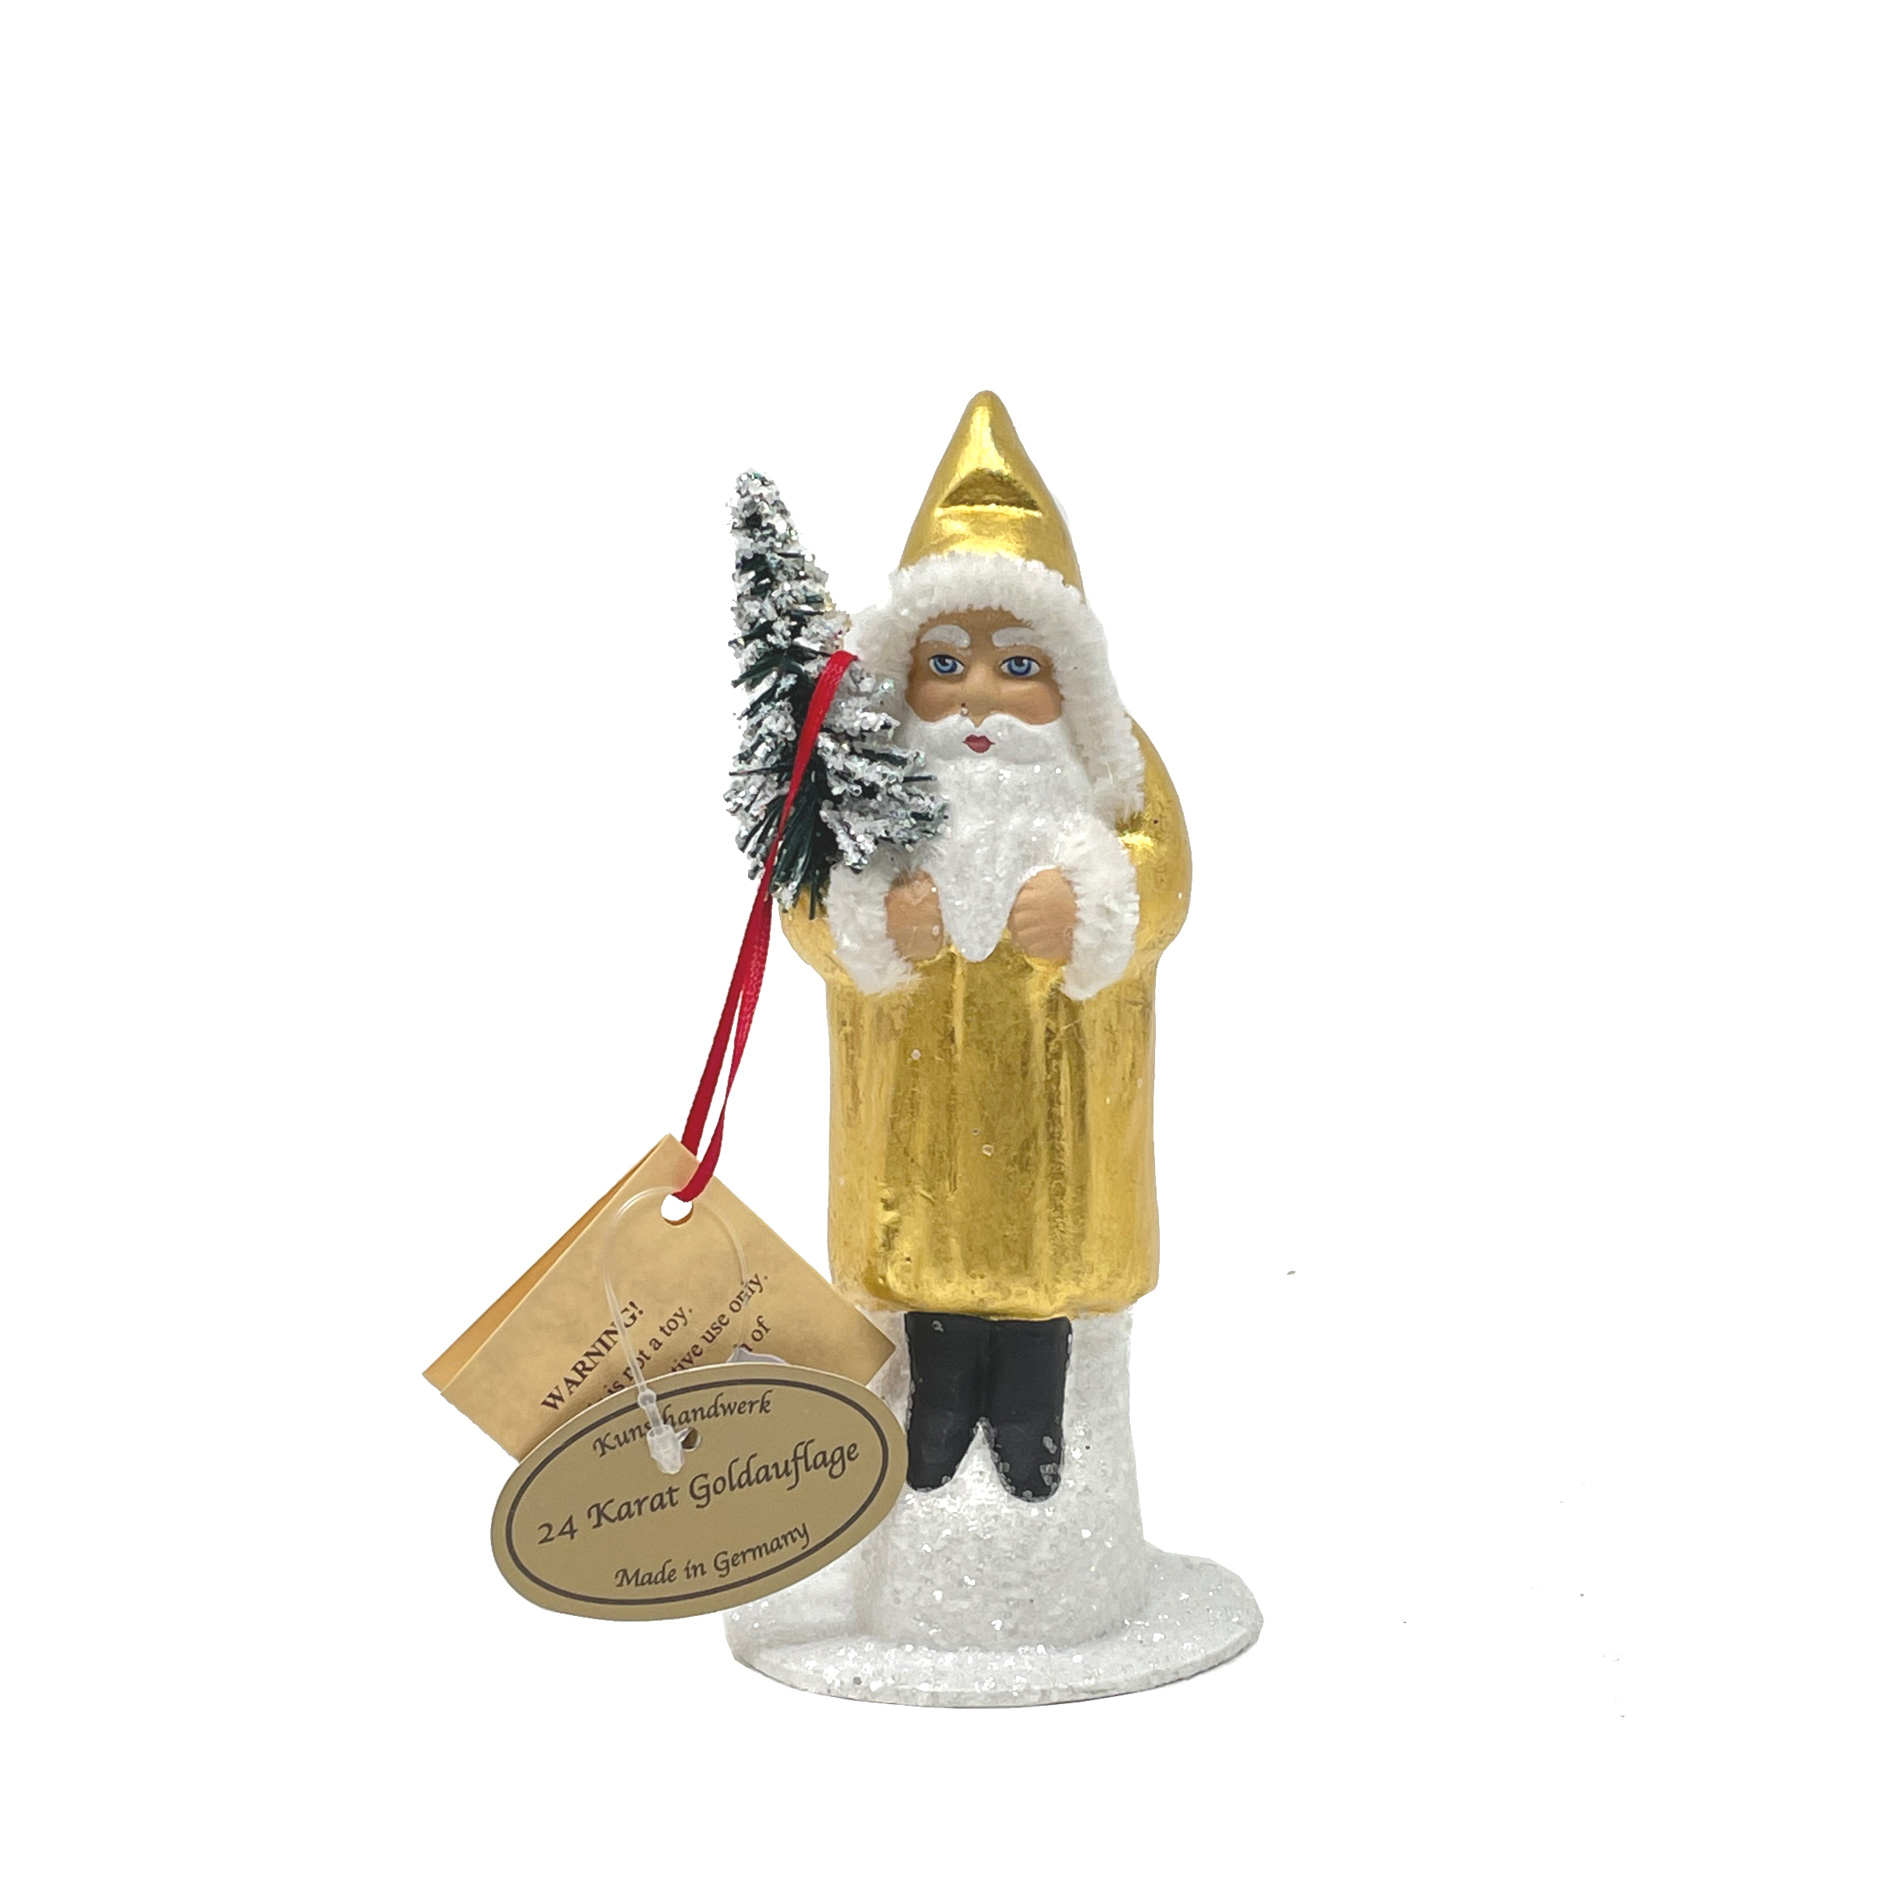 Ino Schaller Santa Gold, 24 Karat Goldauflage,  Weihnachtsmann Nostalgie von Ino Schaller, ca. 15 cm 